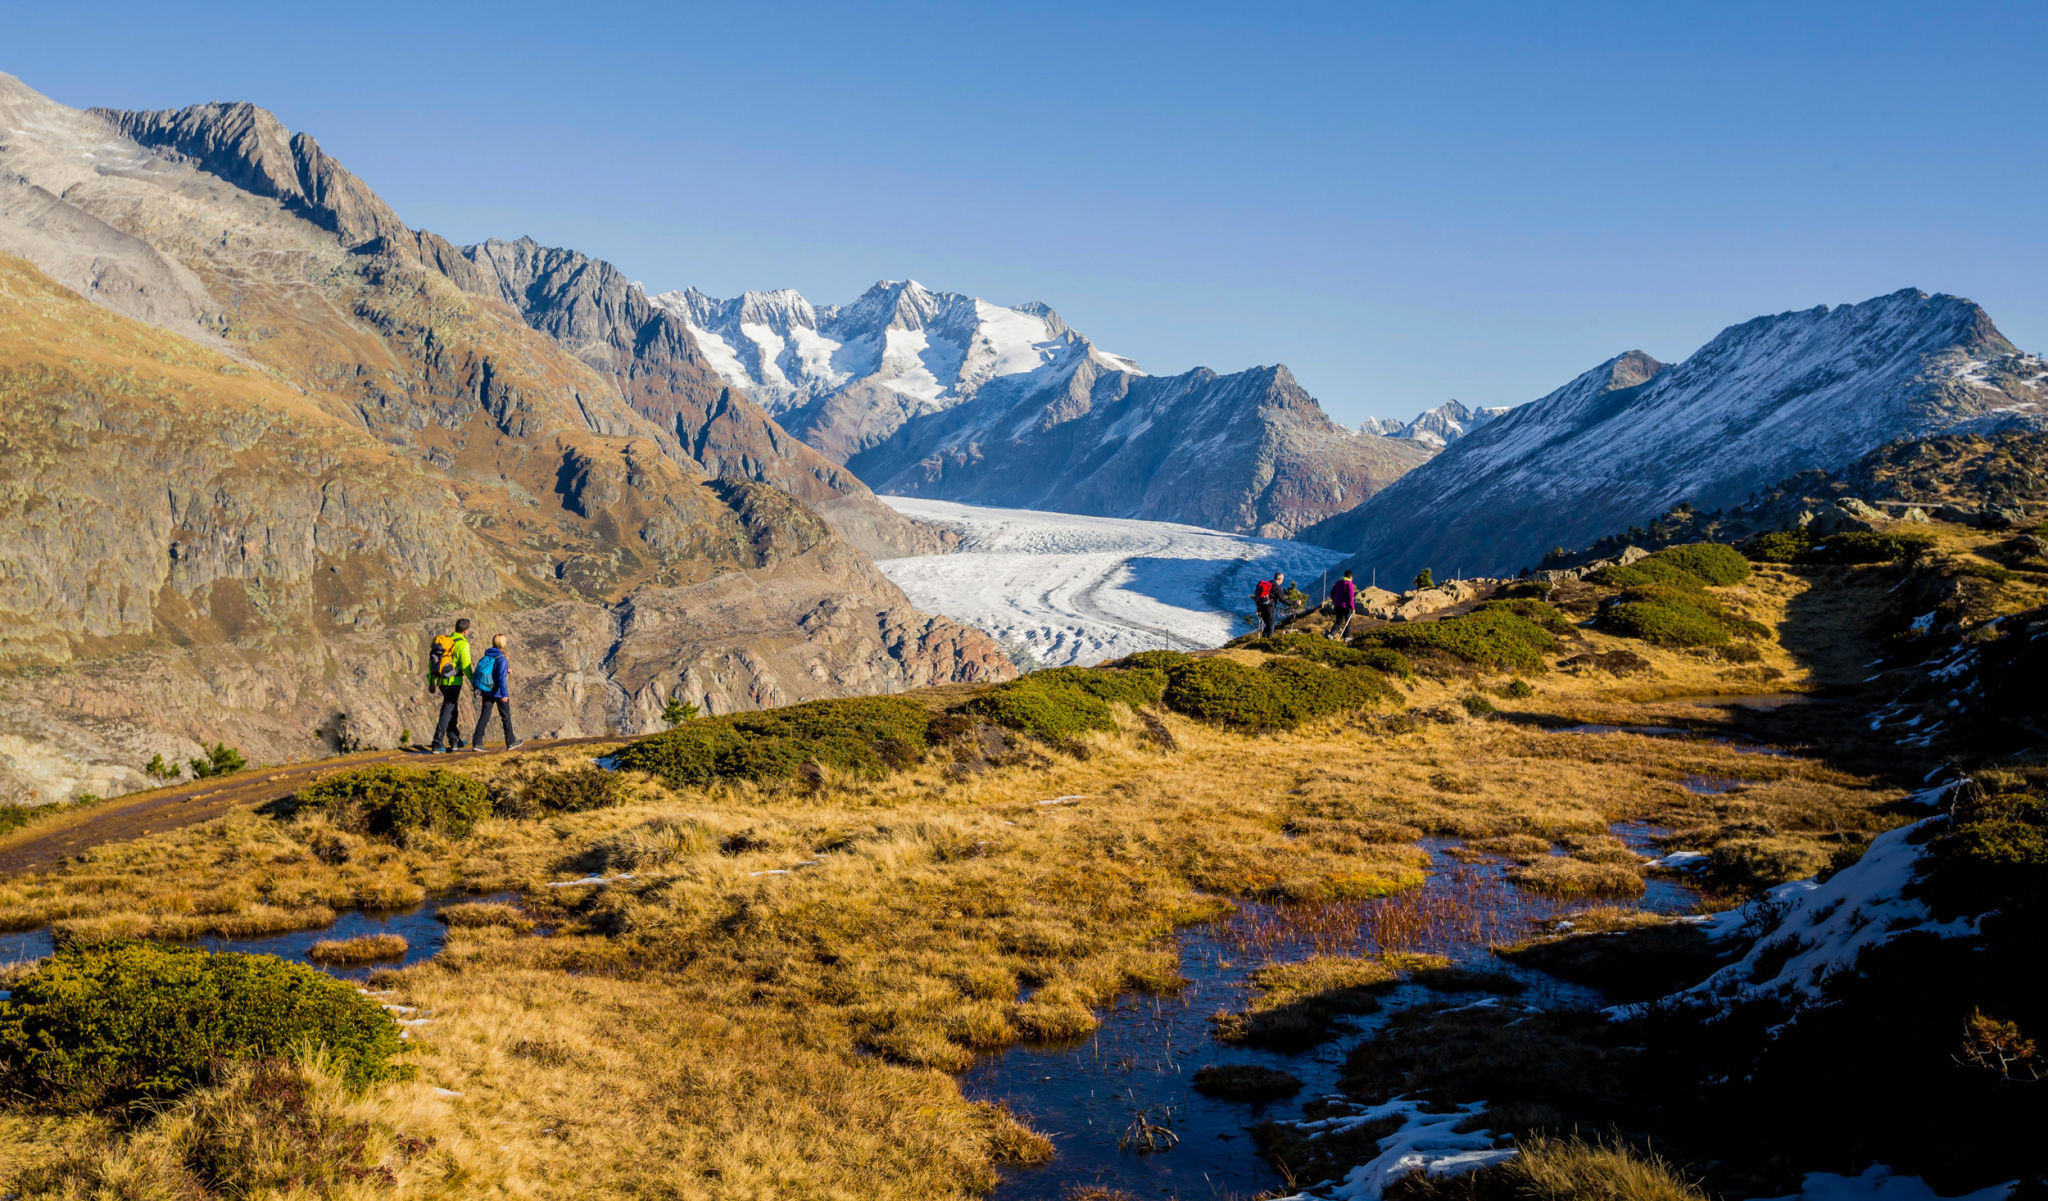 Die Leute wandern zum Aletschgletscher, der Anblick ist besonders im Herbst mit seinen schönen Farben herrlich.
Wallis, Schweiz.